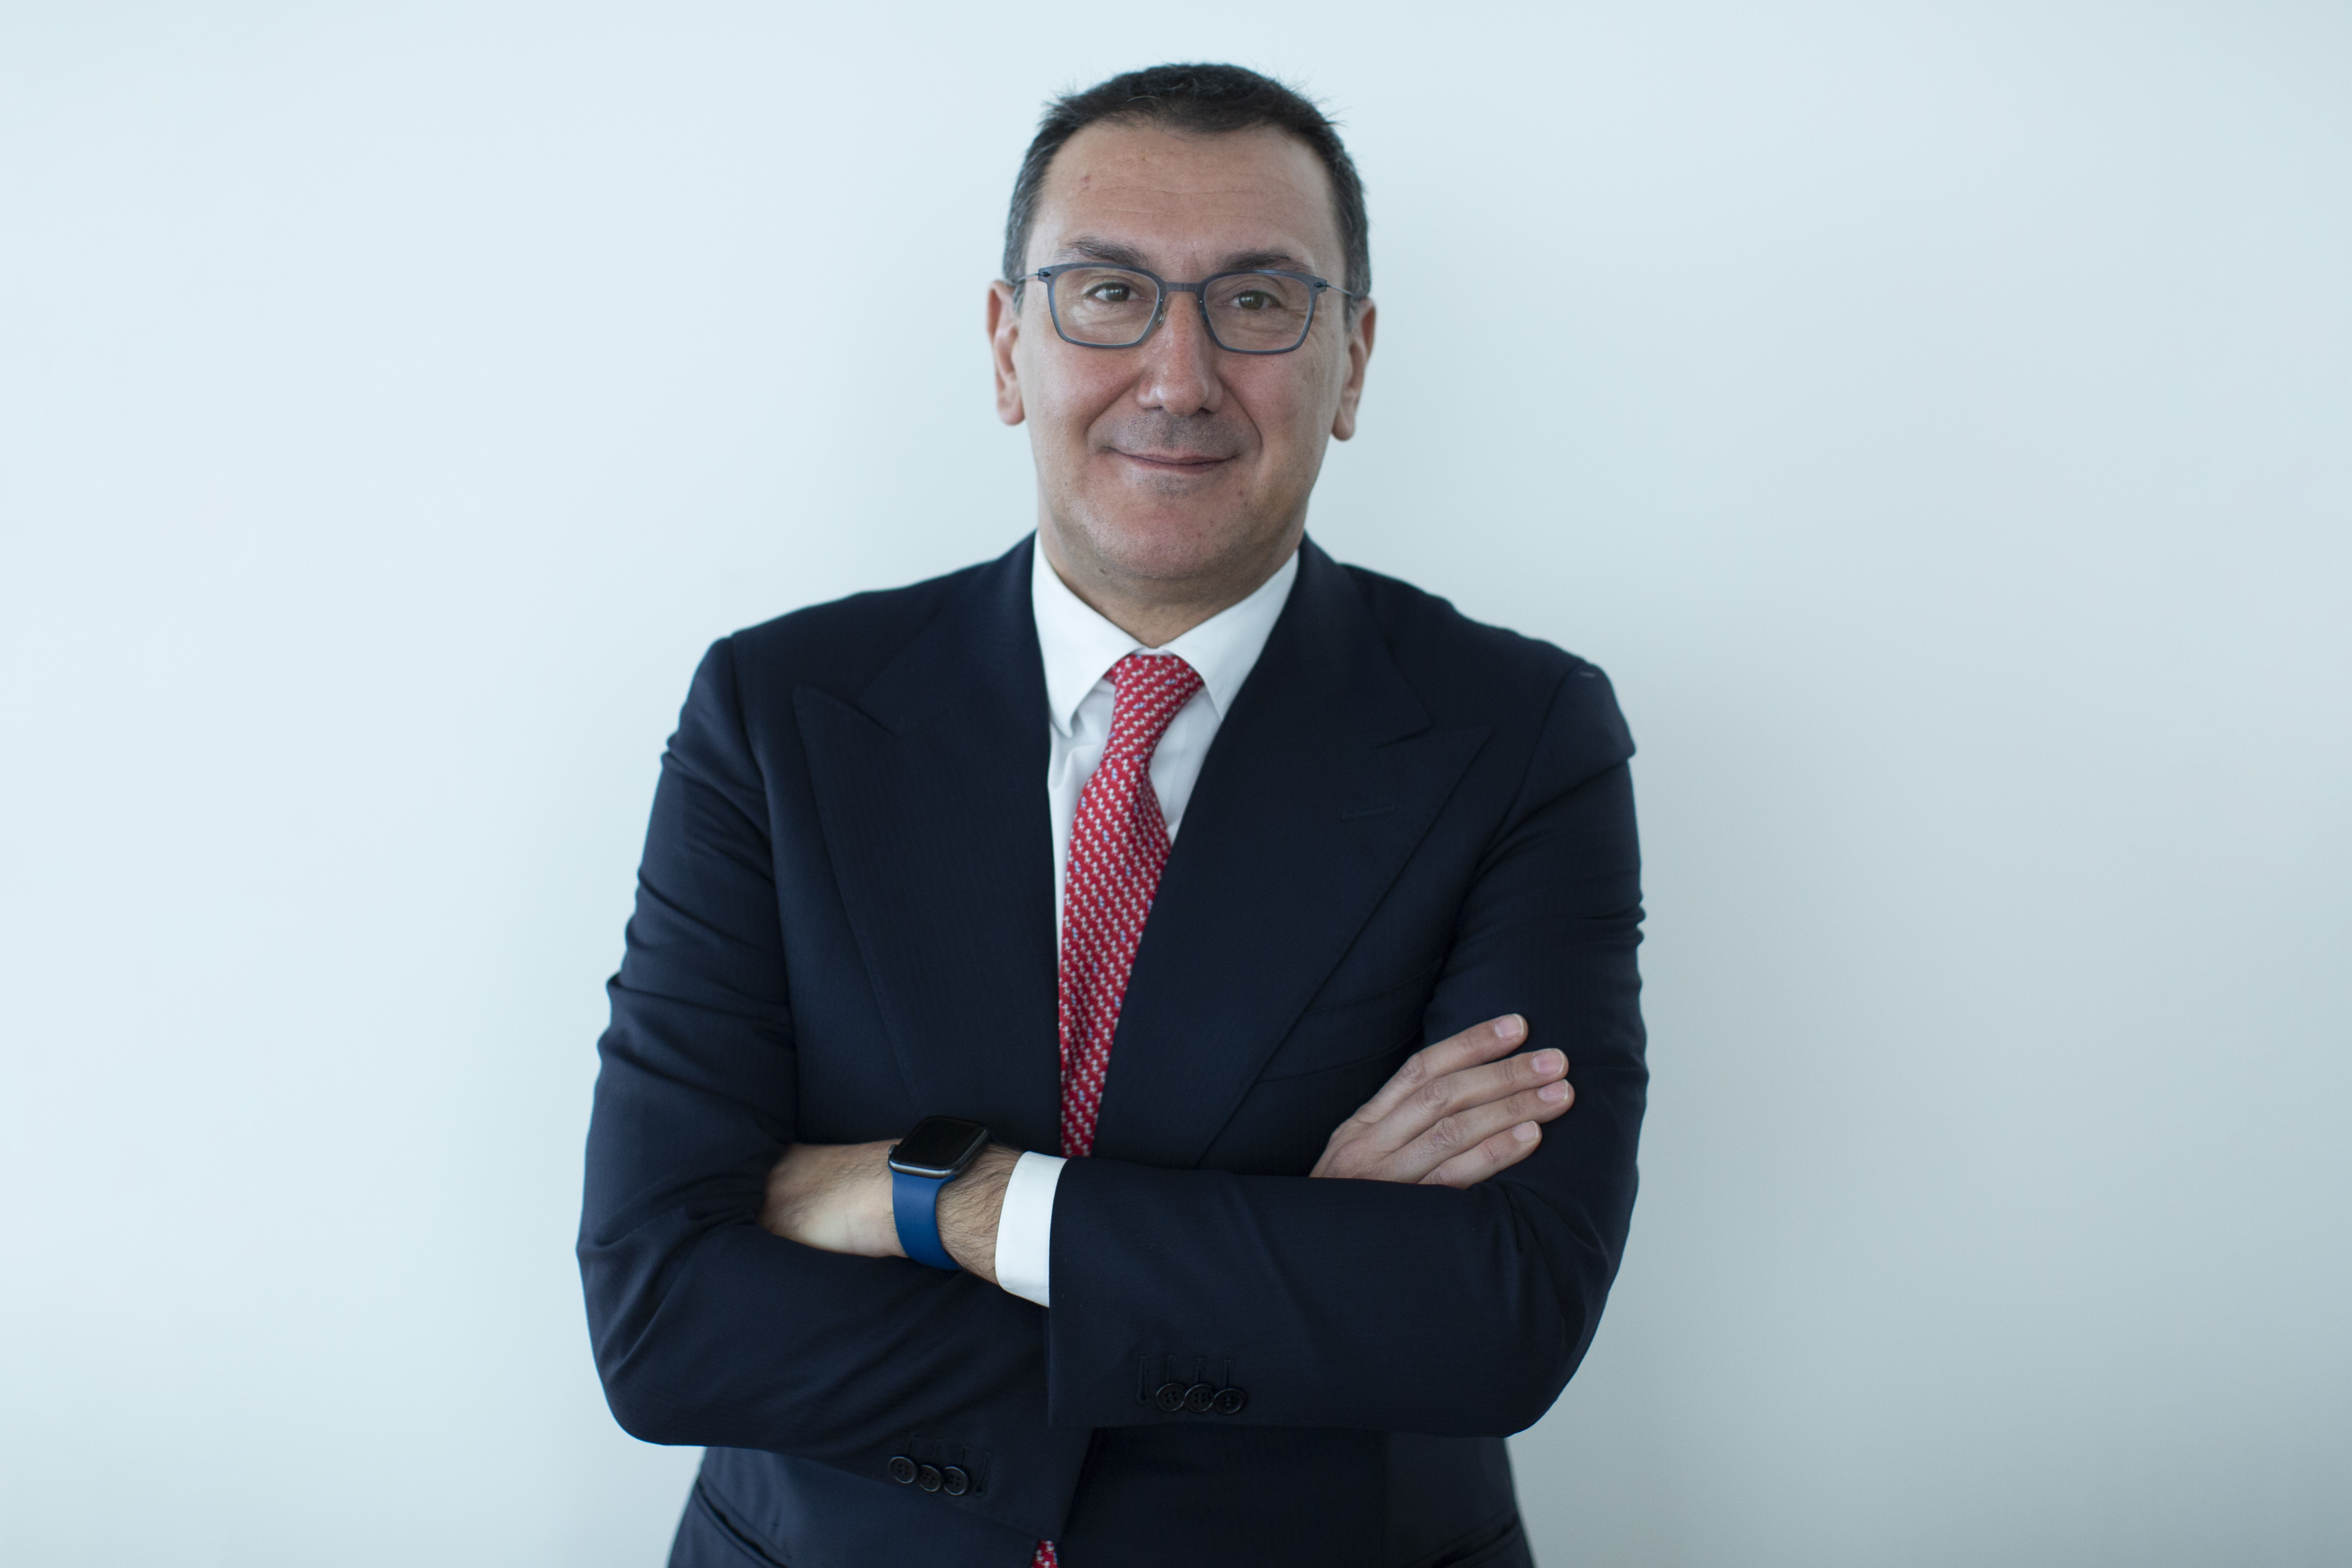 AURELIO MACCARIO - Supervision, Risks & Profitability